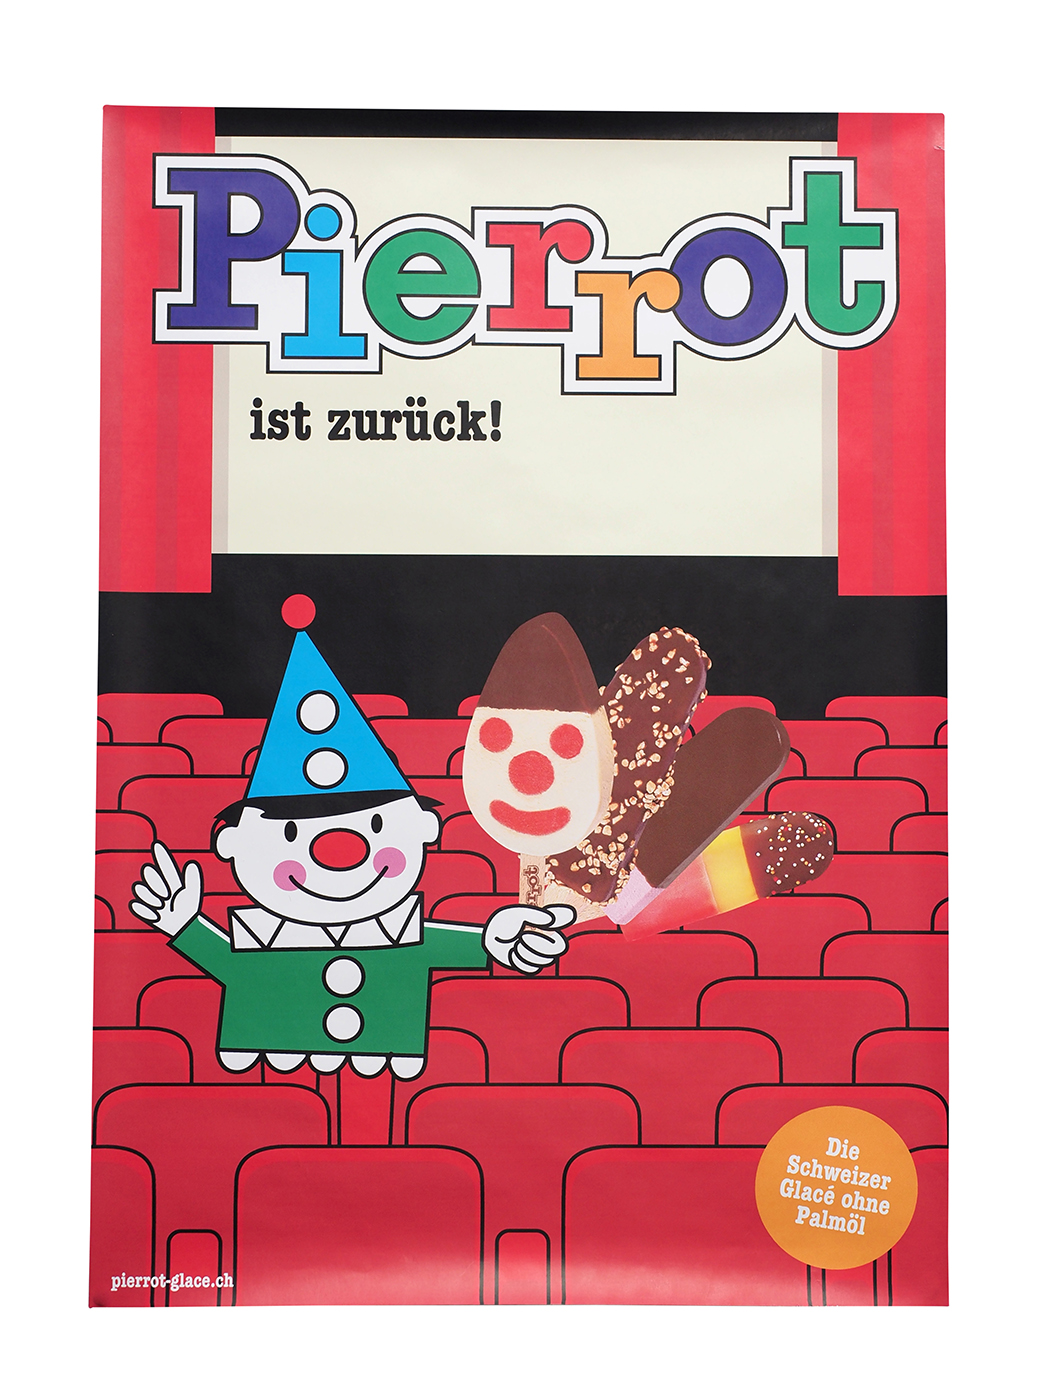 Pierrot Plakat Kino